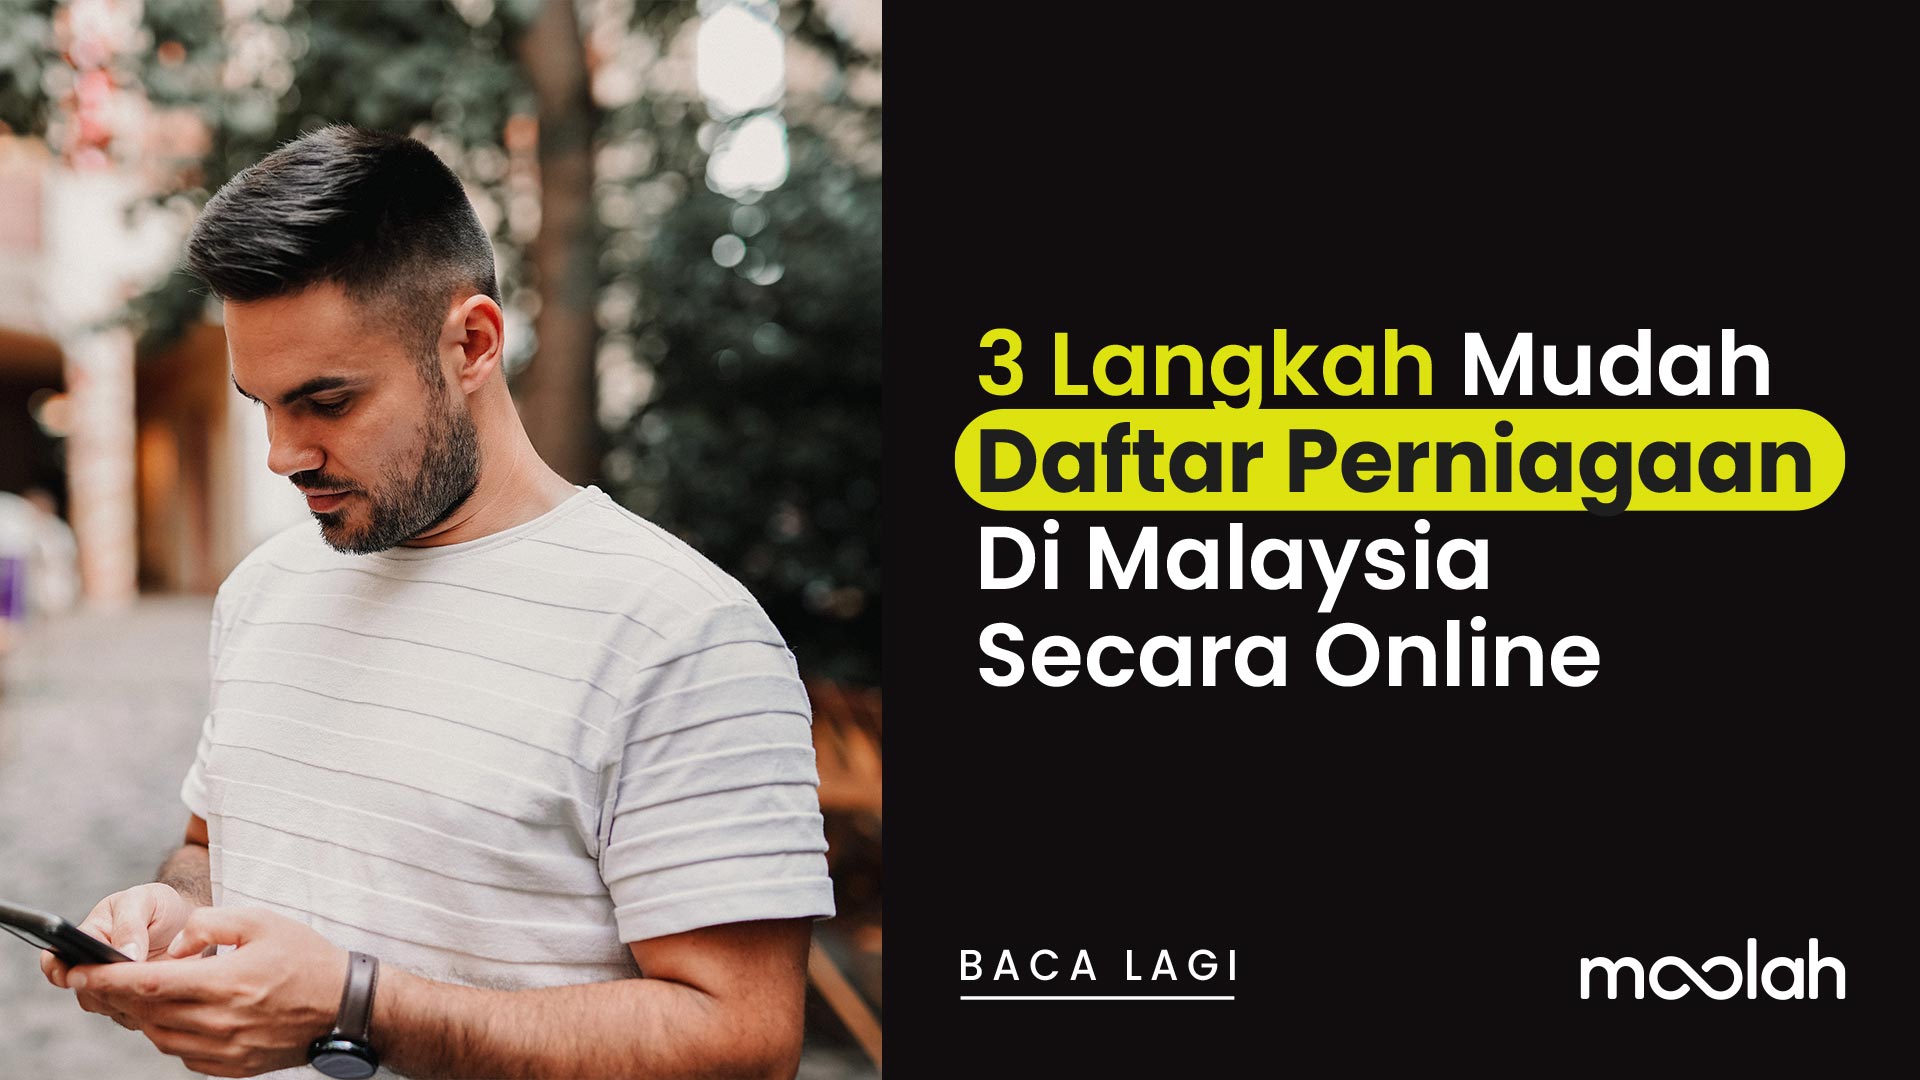 3 Langkah Mudah Untuk Daftar Perniagaan Di Malaysia Secara Online